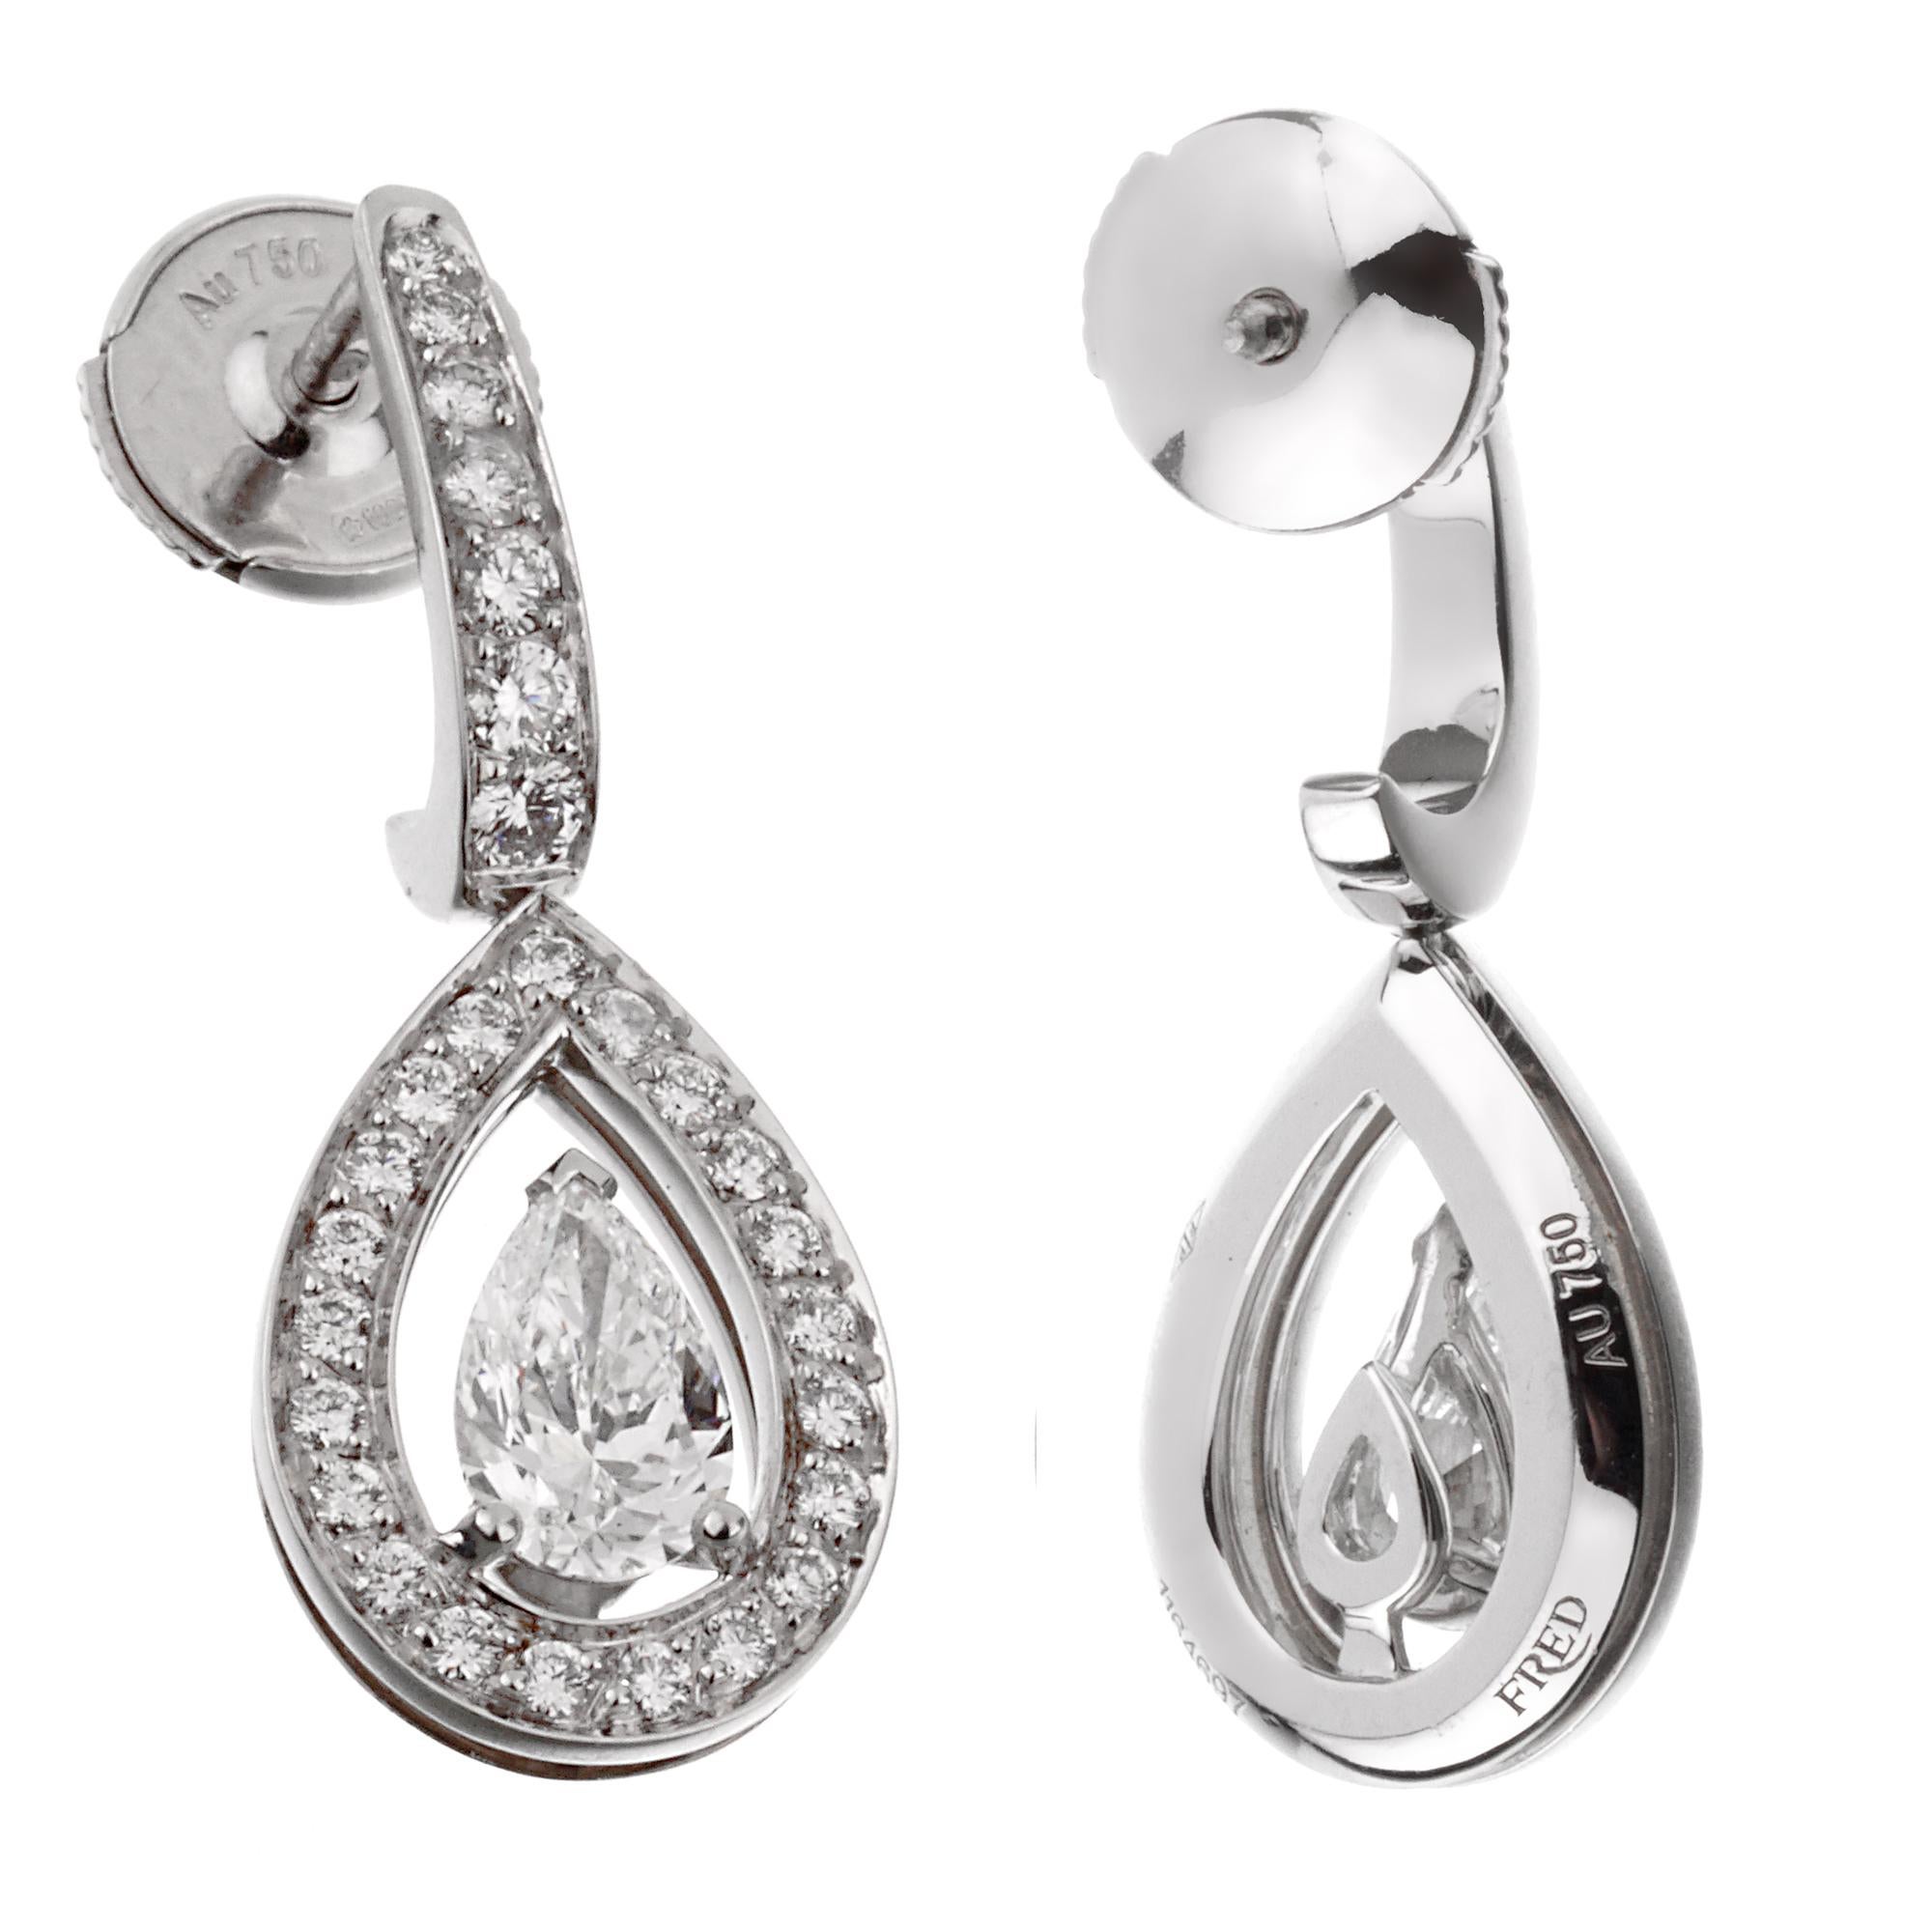 Une superbe paire de boucles d'oreilles en diamant Fred of Paris, chaque boucle d'oreille présente un diamant central en forme de poire de 0,51 et 0,52 ct, orné de diamants ronds de taille brillante dans un or blanc 18k chatoyant. Chaque diamant